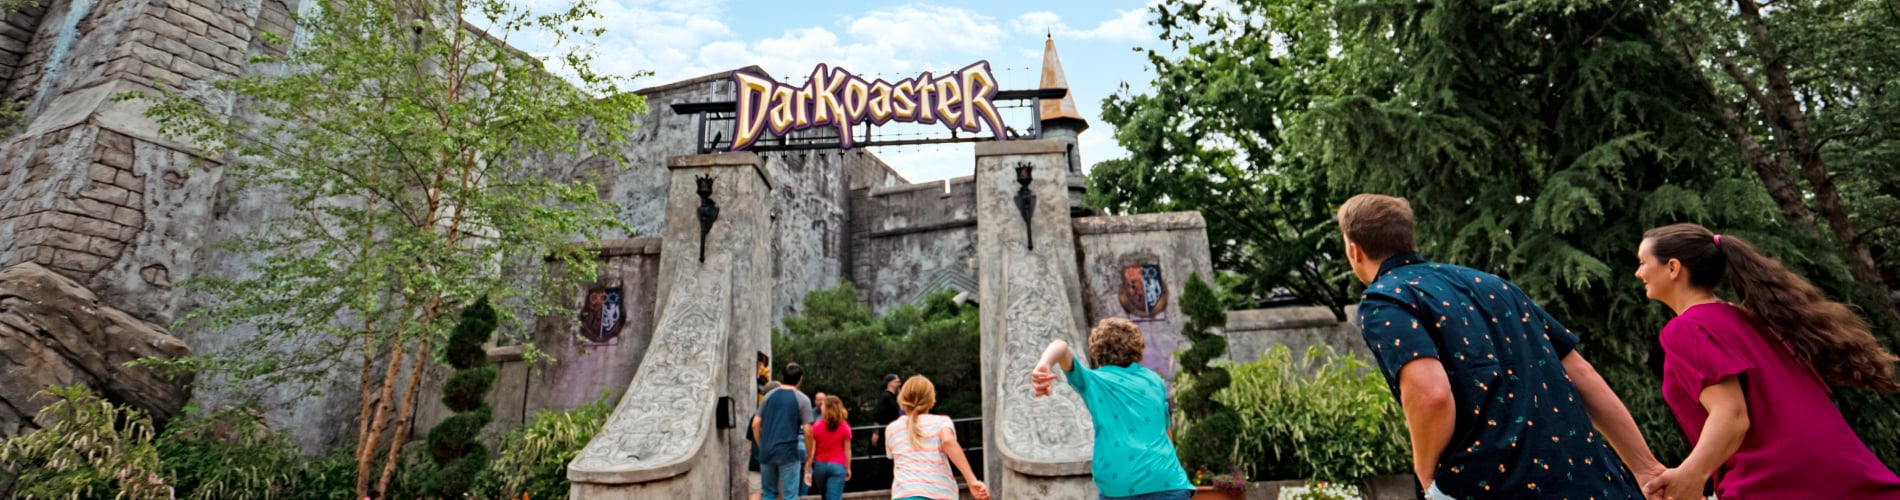 Family rushing to ride DarKoaster™ at Busch Gardens Williamsburg.